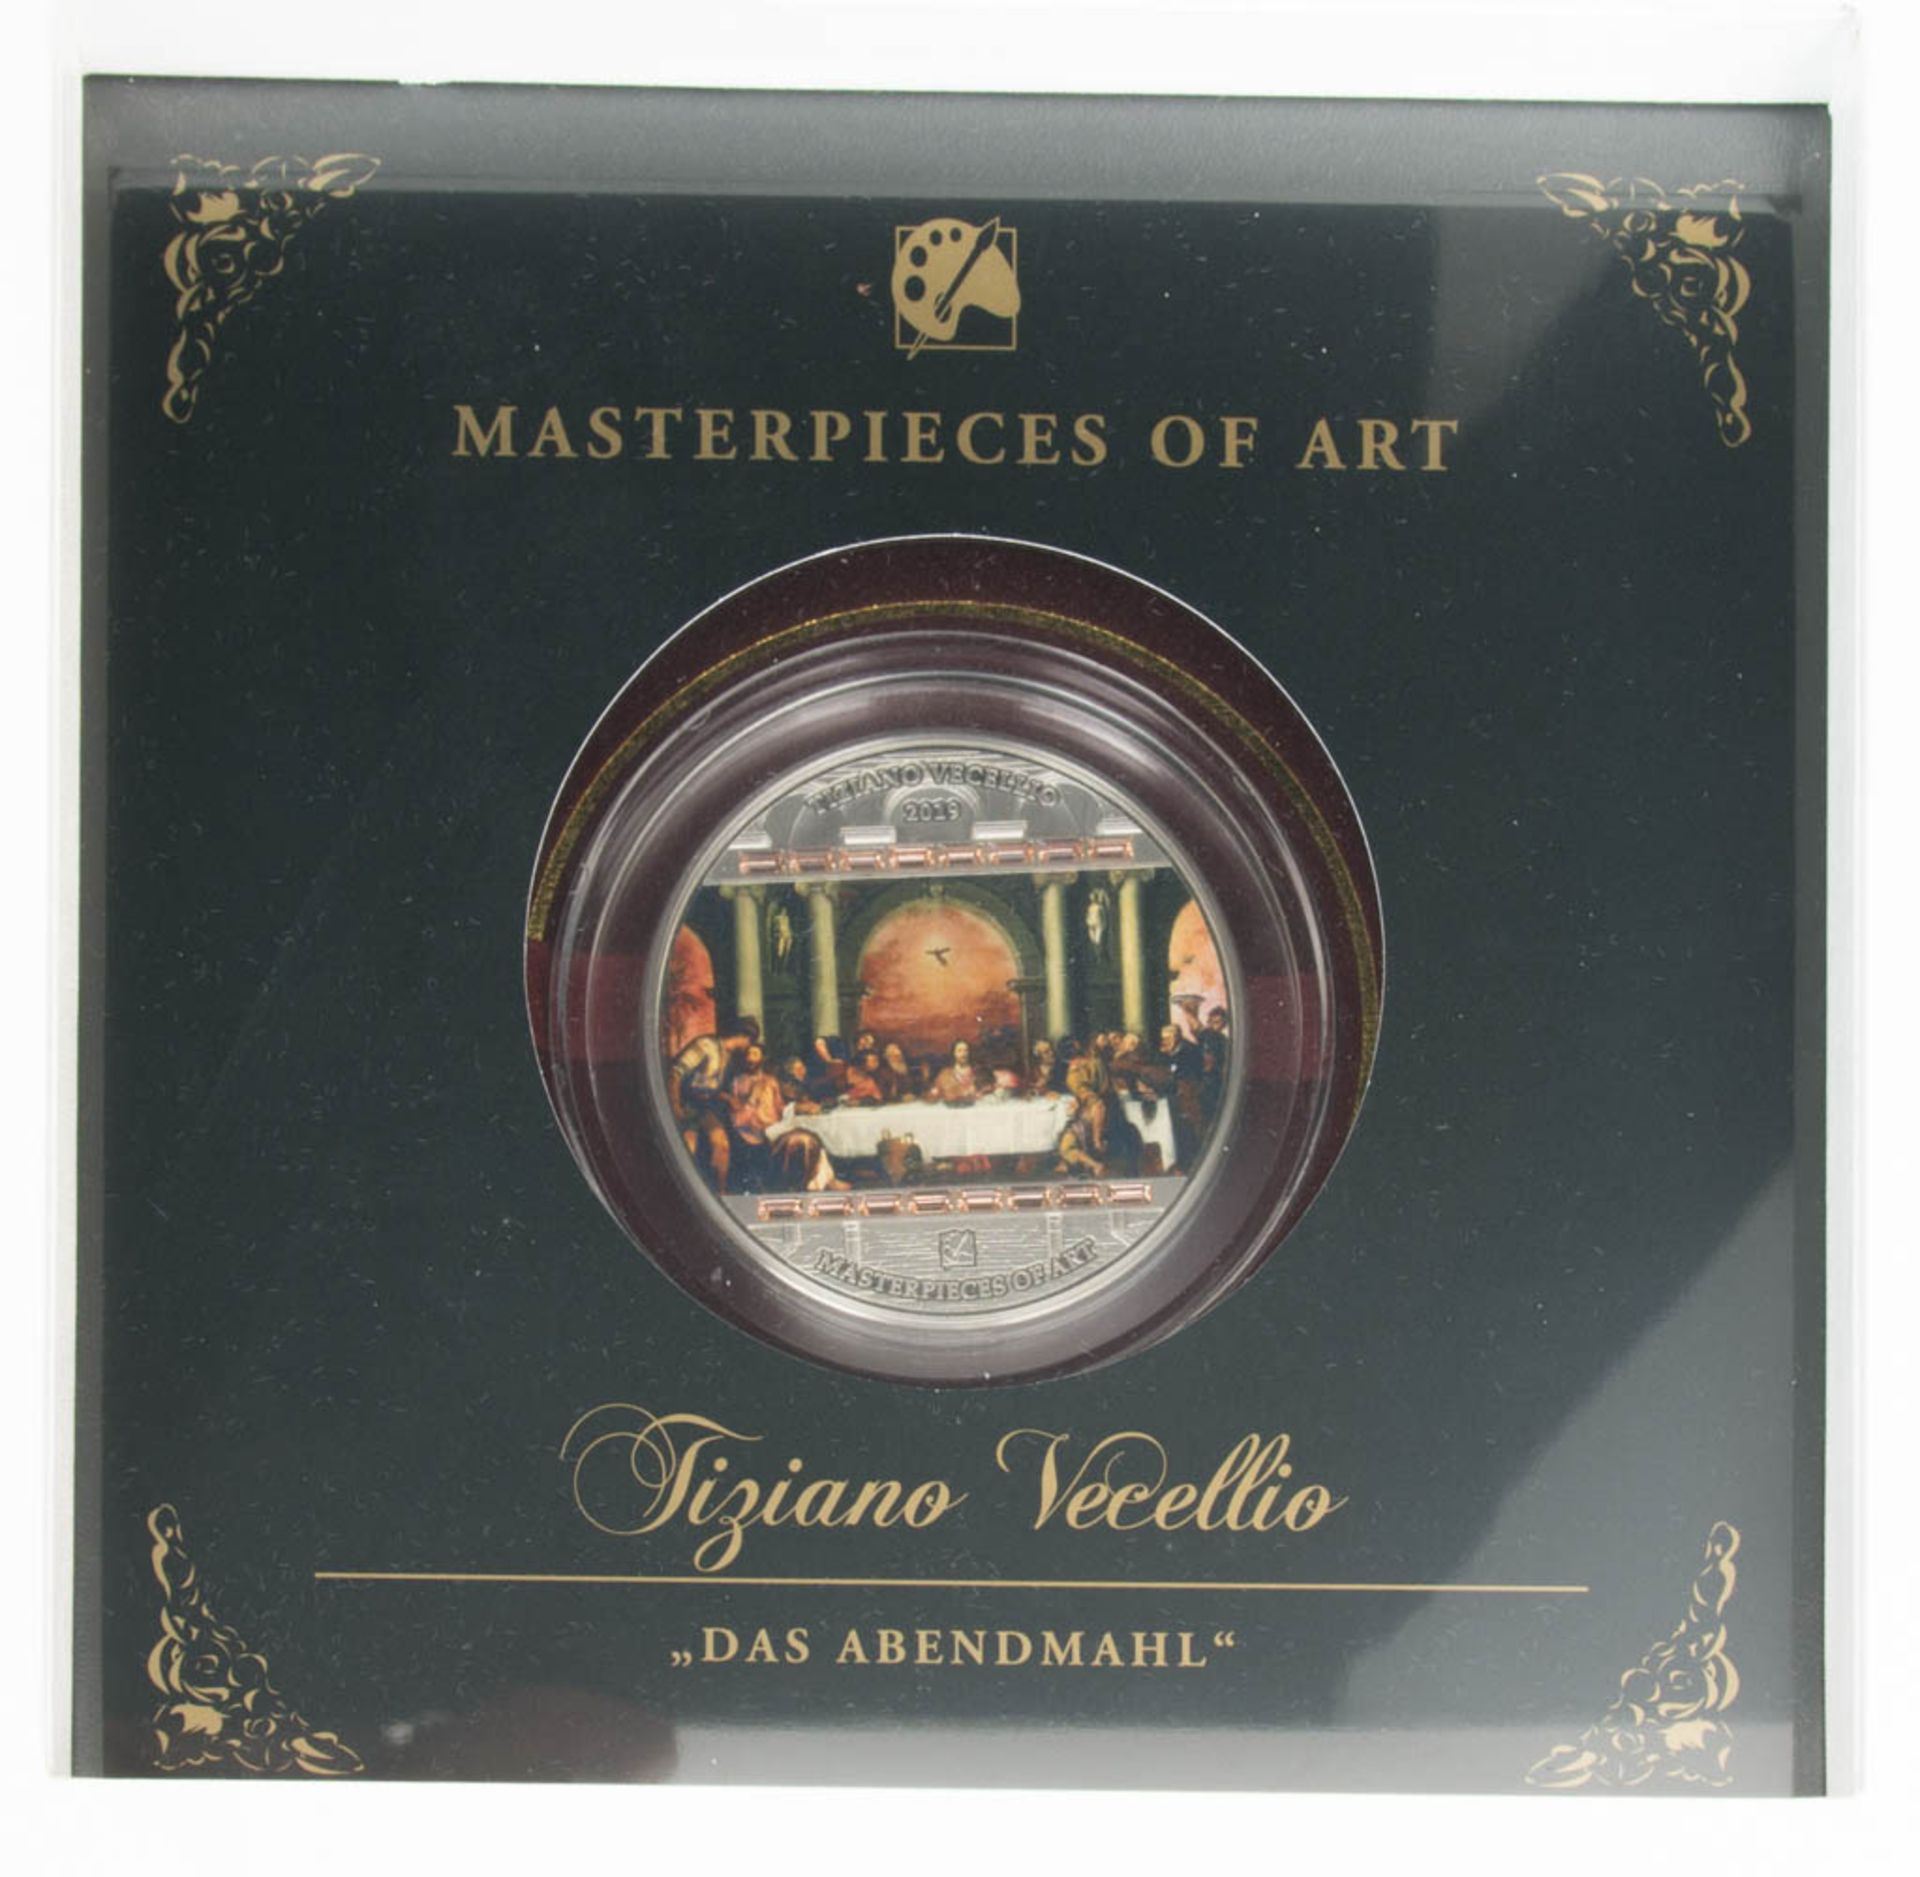 20 US-Dollar Silbermünze - "Das Letzte Abendmahl" - Masterpieces of Art - Image 3 of 3